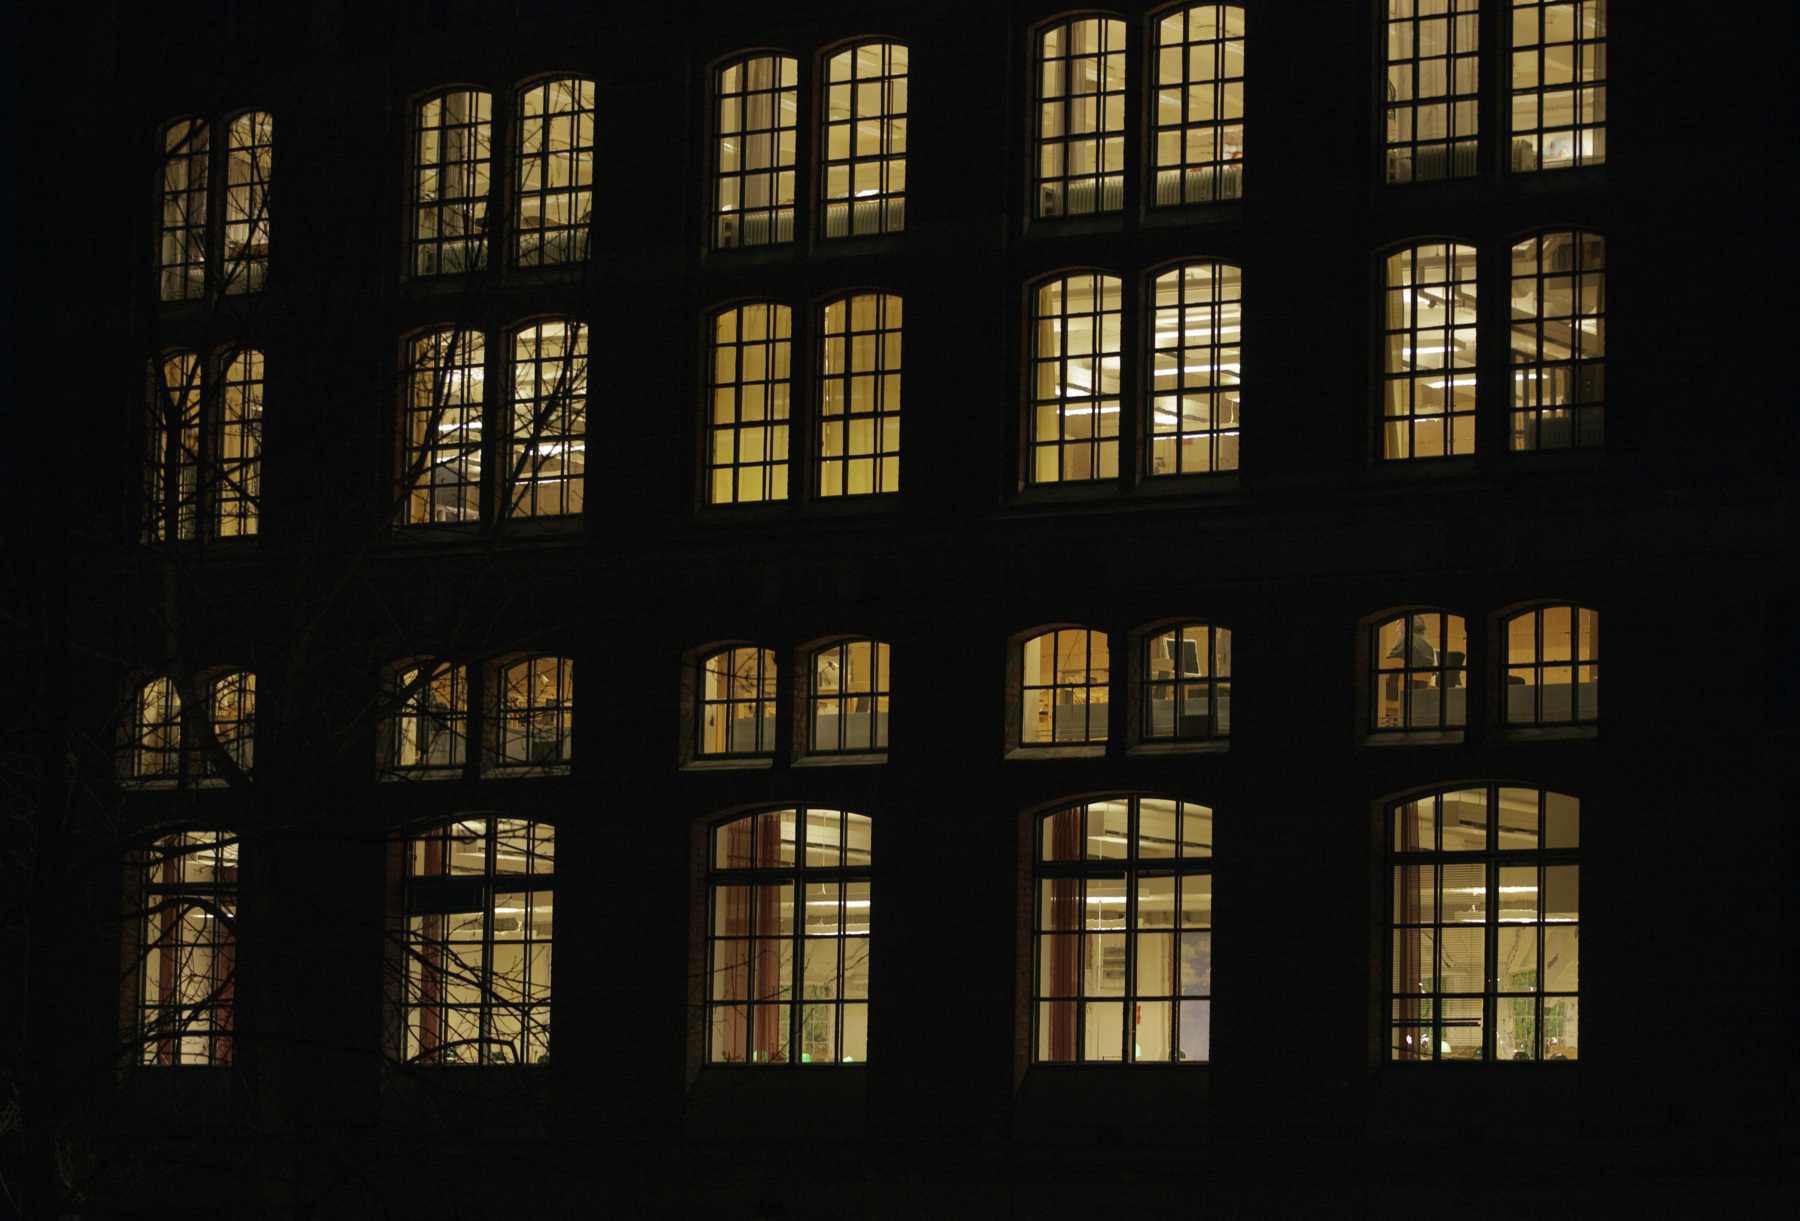 Fönster i äldre byggnad. Natt eller kväll, lamporna lyser gult i fönstren. Foto.